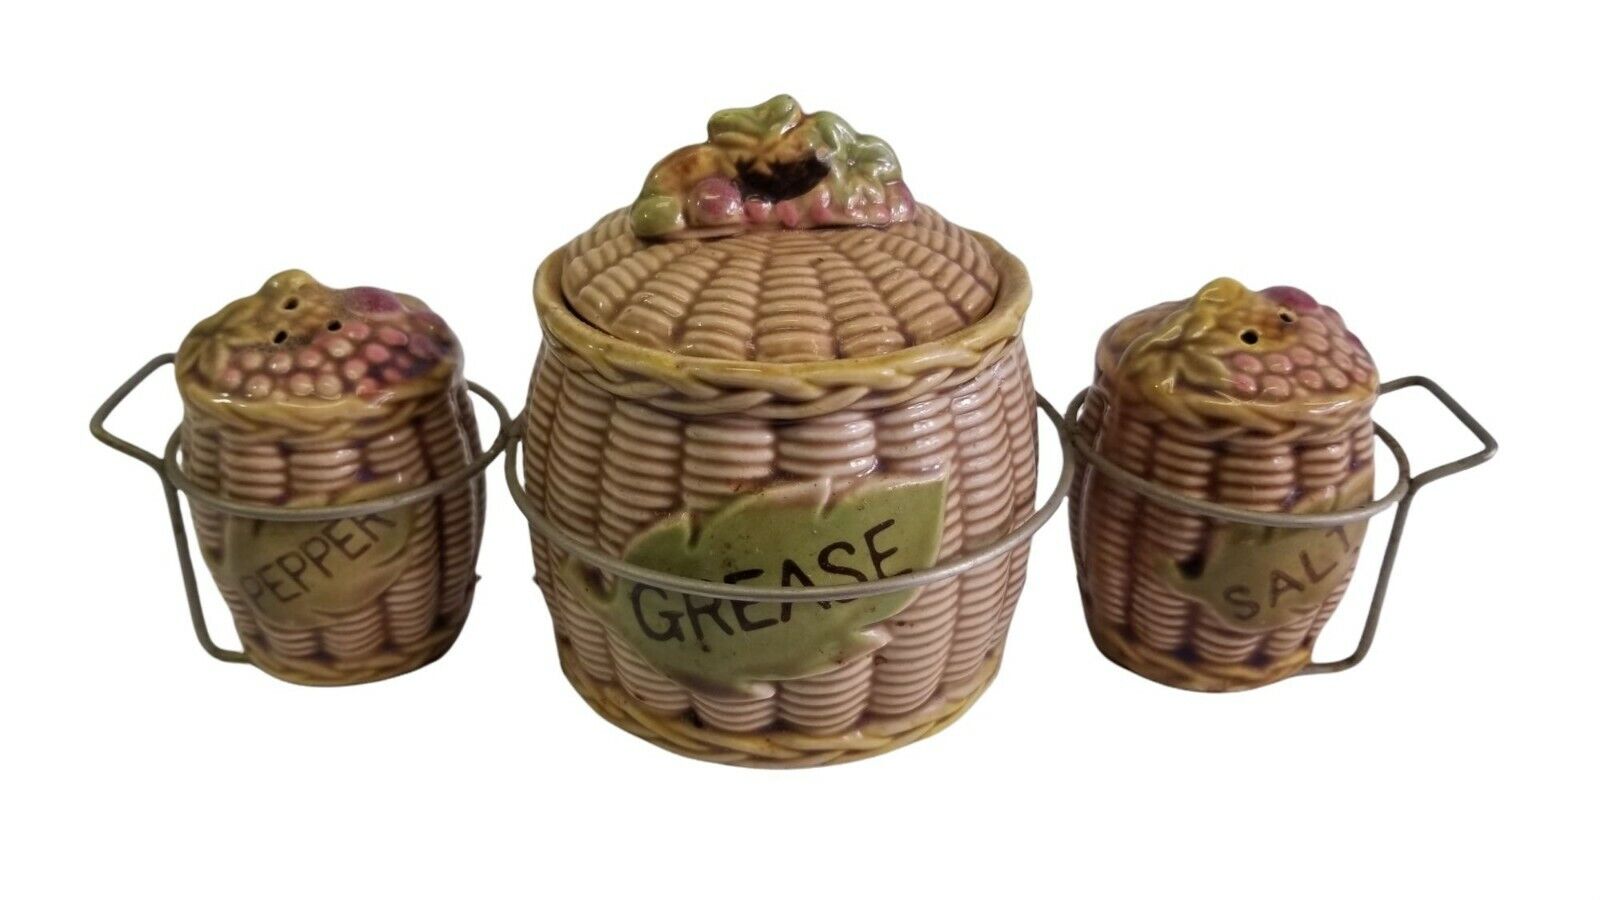 Vintage Tilso Basket Grease Jar Dish Salt and Pepper Shakers and Rack Japan 60s